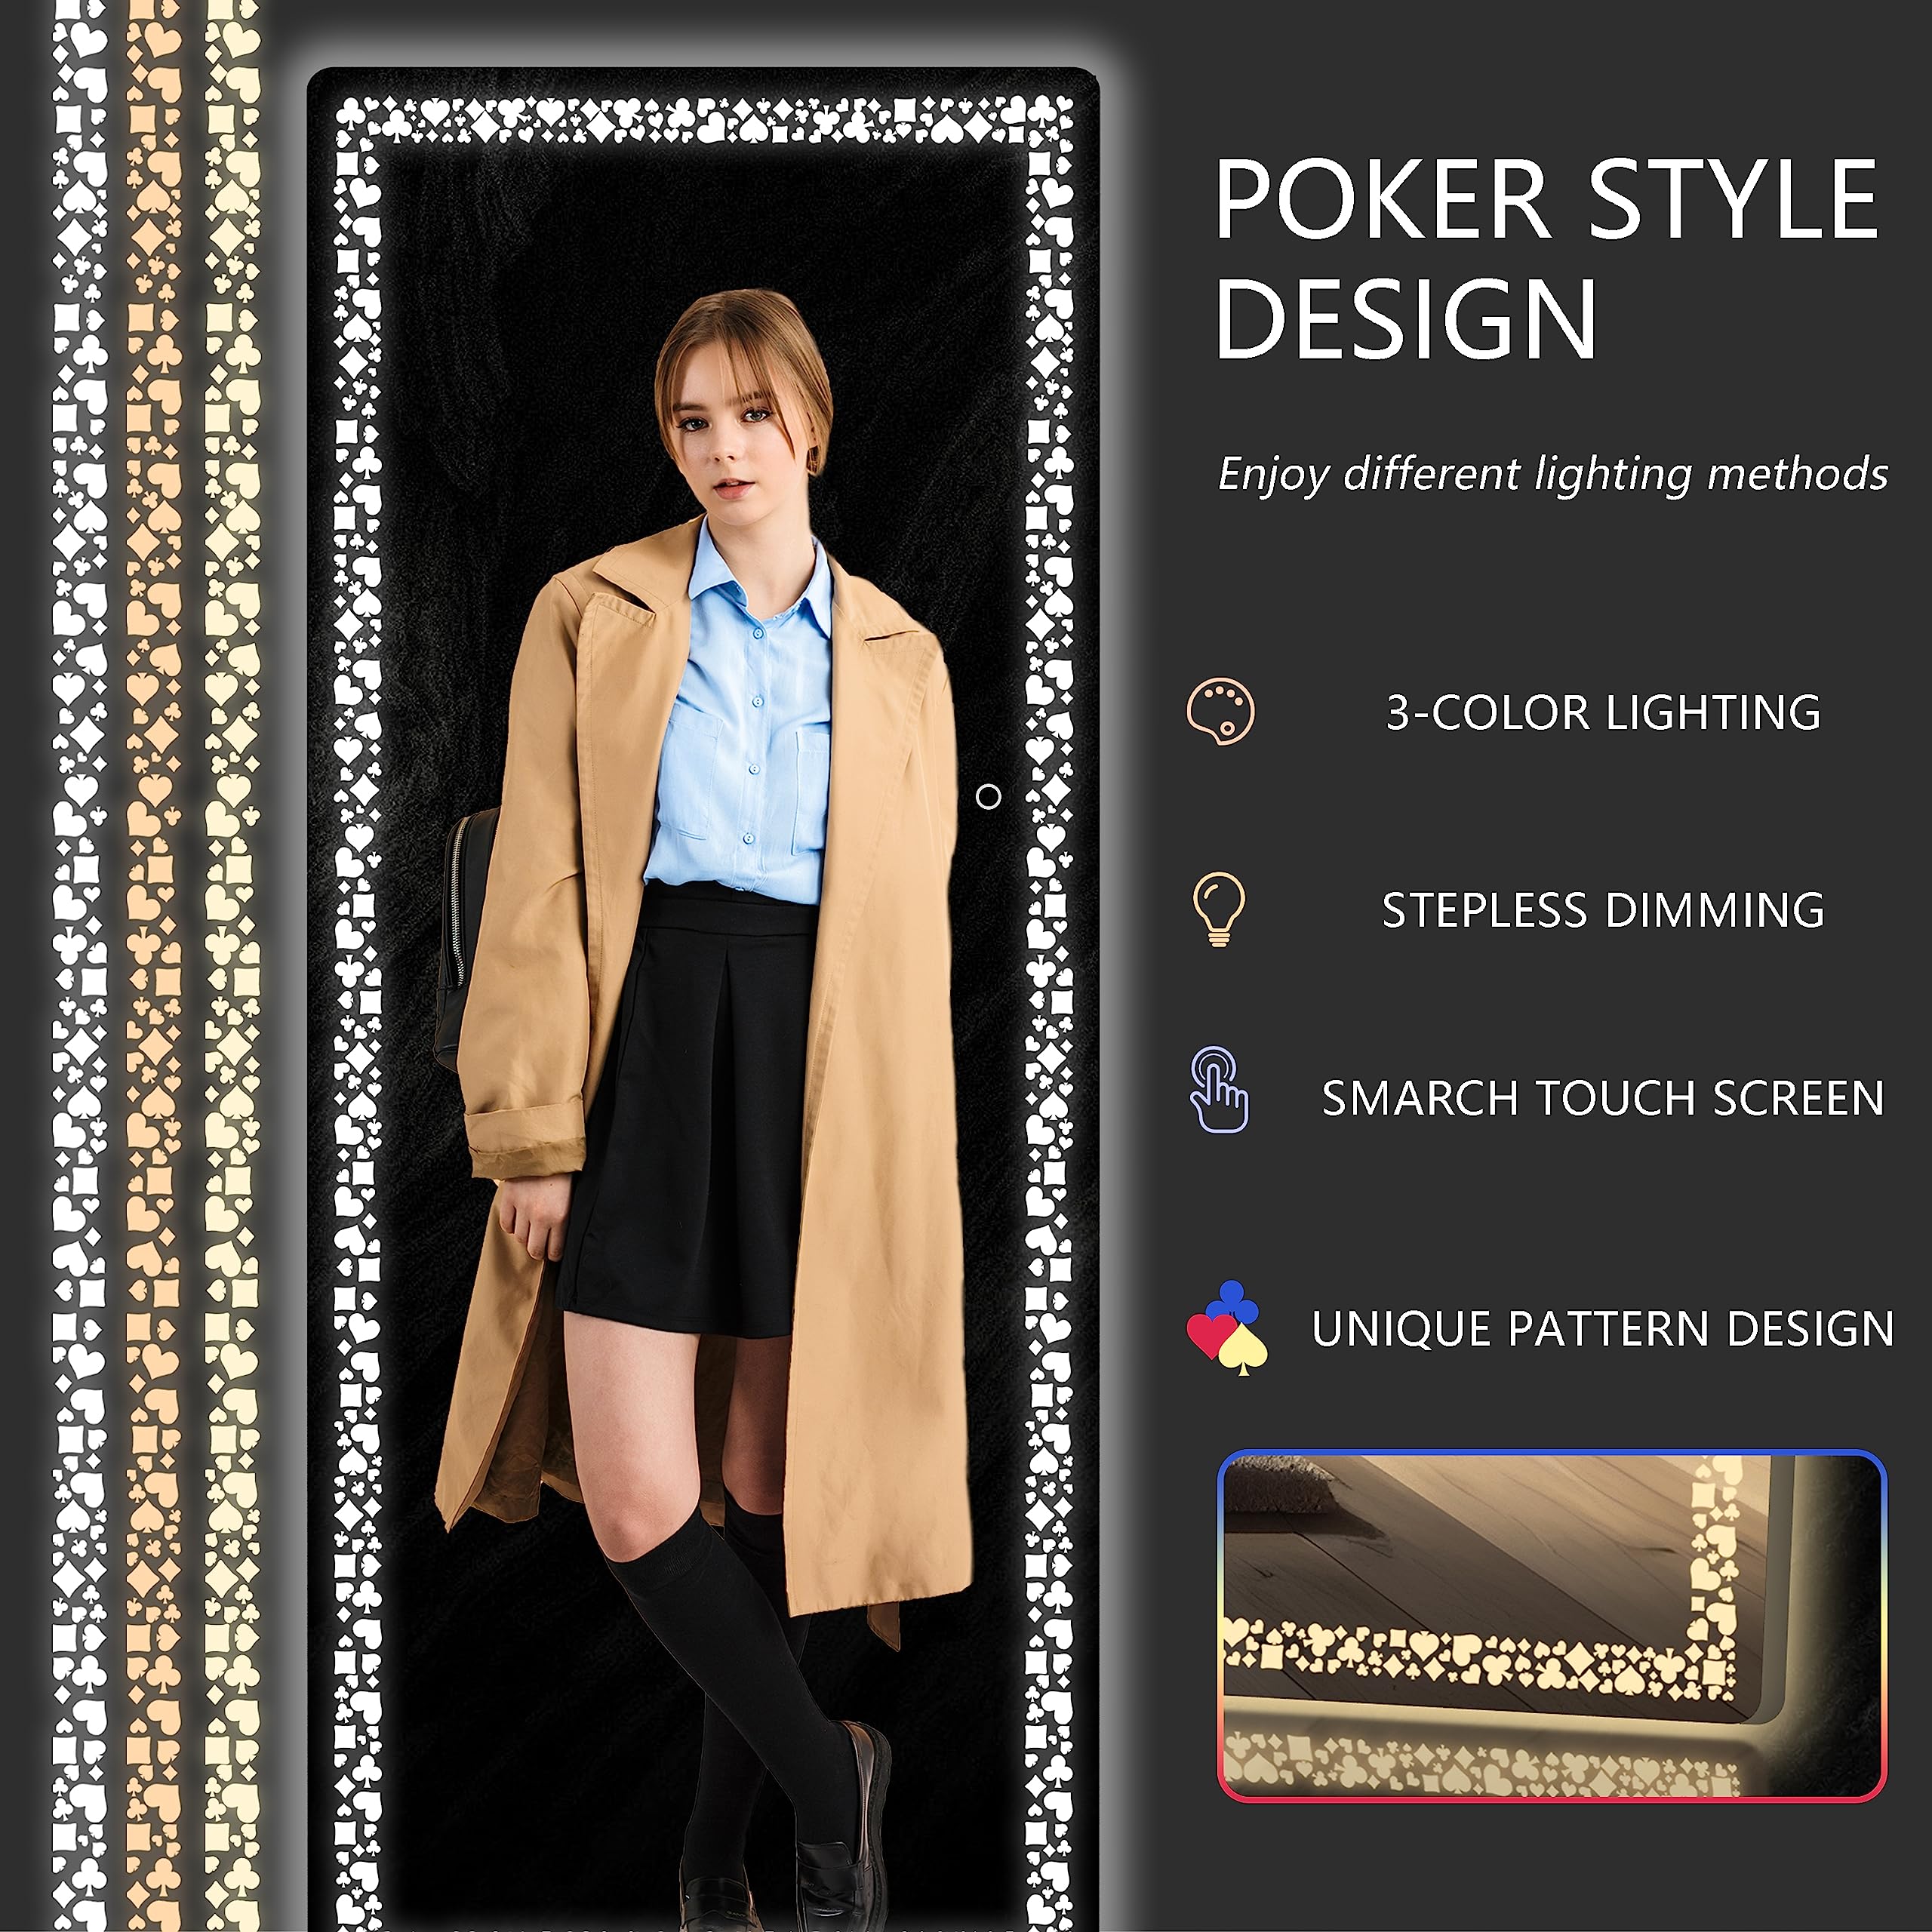 White 63"x20" LED Full-Length Mirror, Poker Flower Pattern